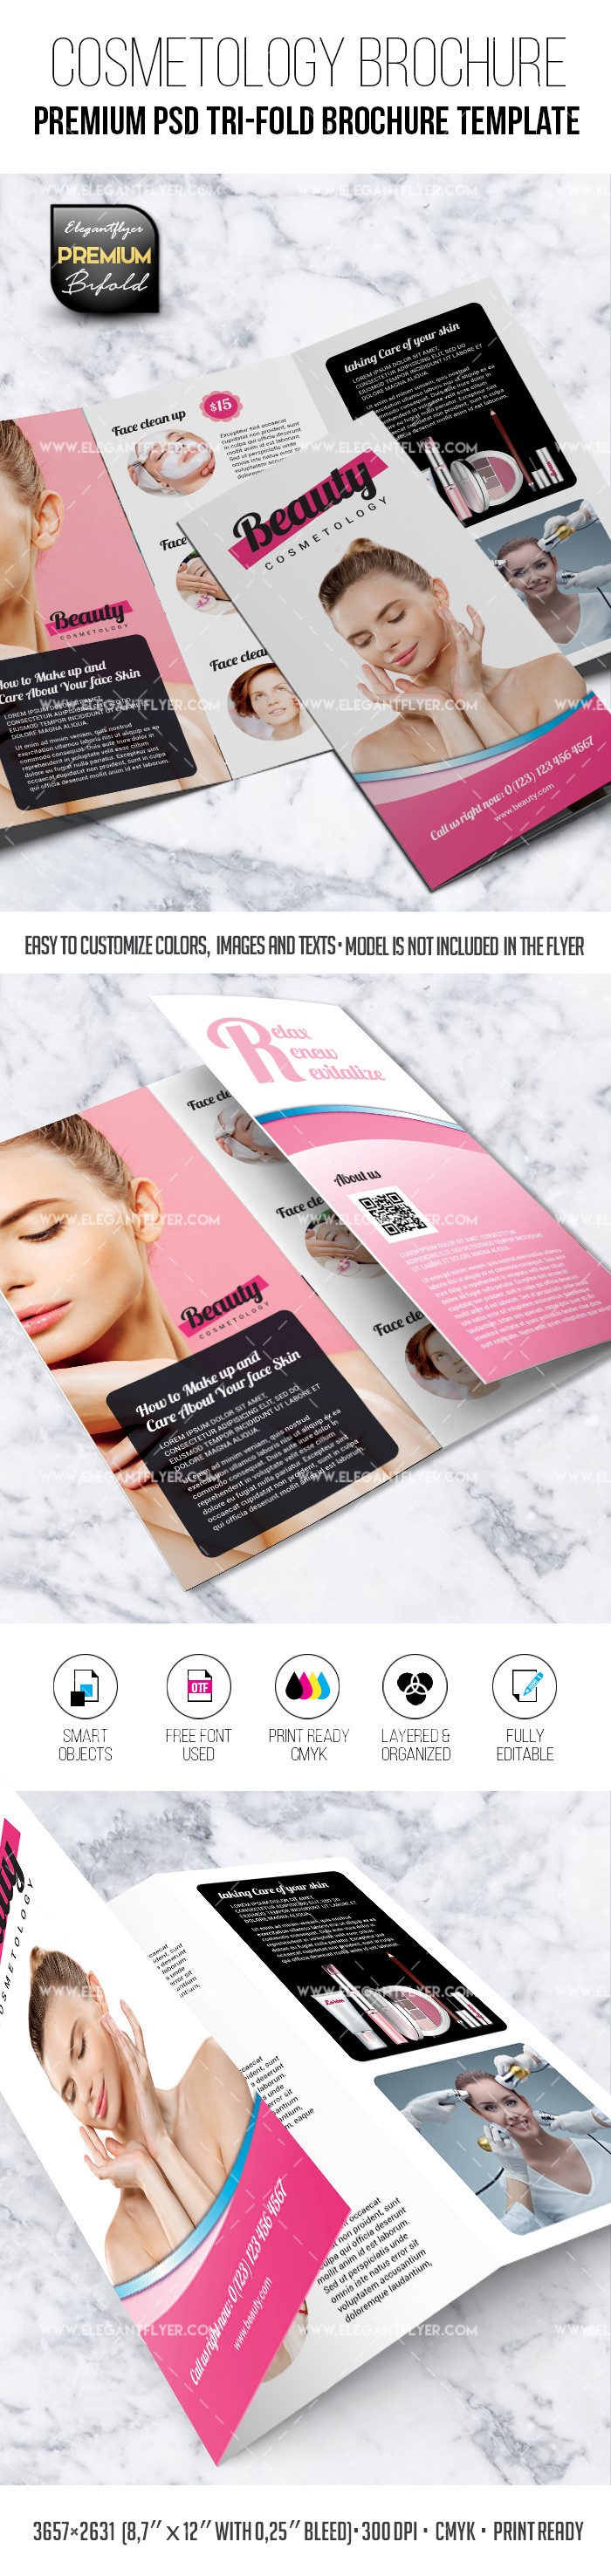 Brochure kosmetologii w trzech składanych częściach by ElegantFlyer